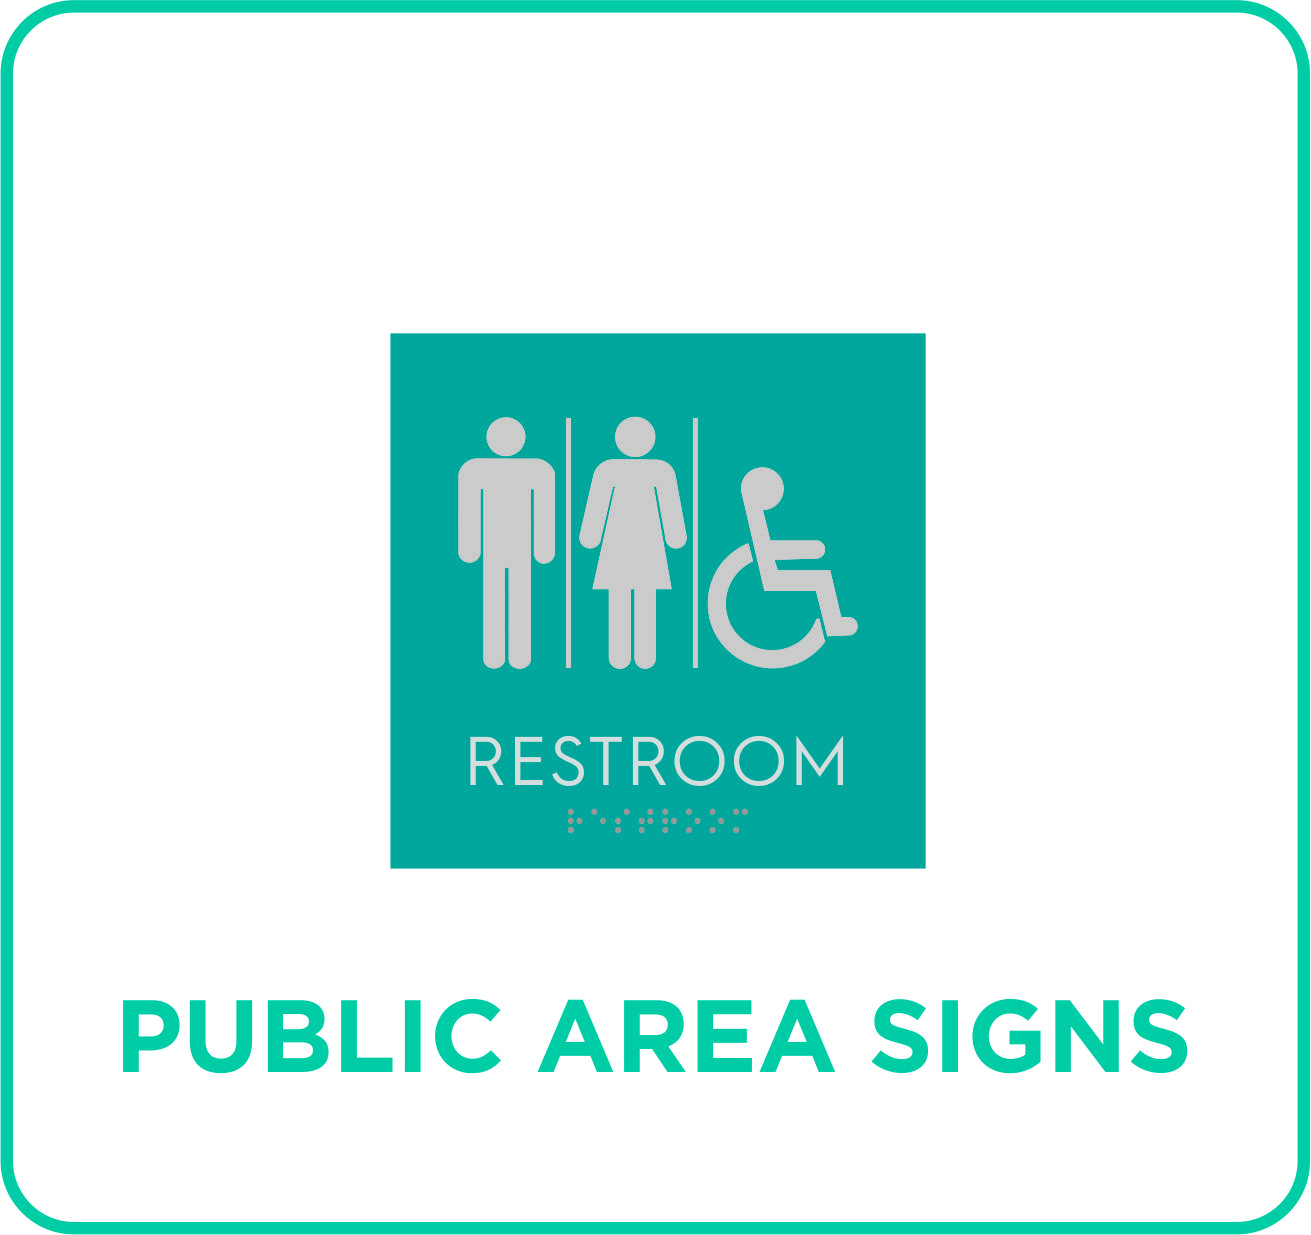 Signature Inn - Public Area Signs